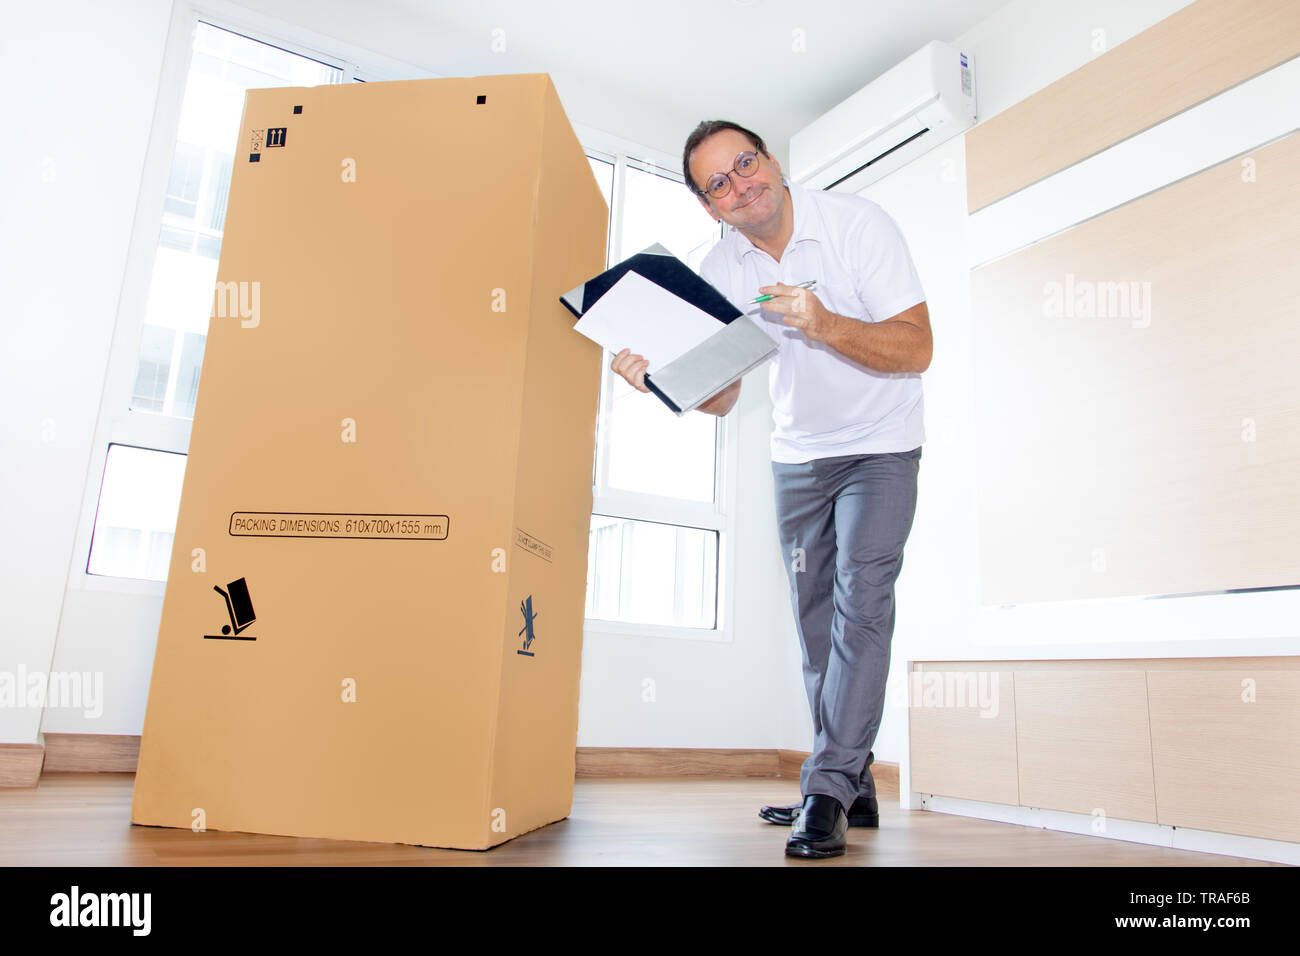 Un homme dans une salle vide montre un document papier vierge pour le transport de gros paquets. Le facteur livre les colis pour le nouvel appartement. Banque D'Images